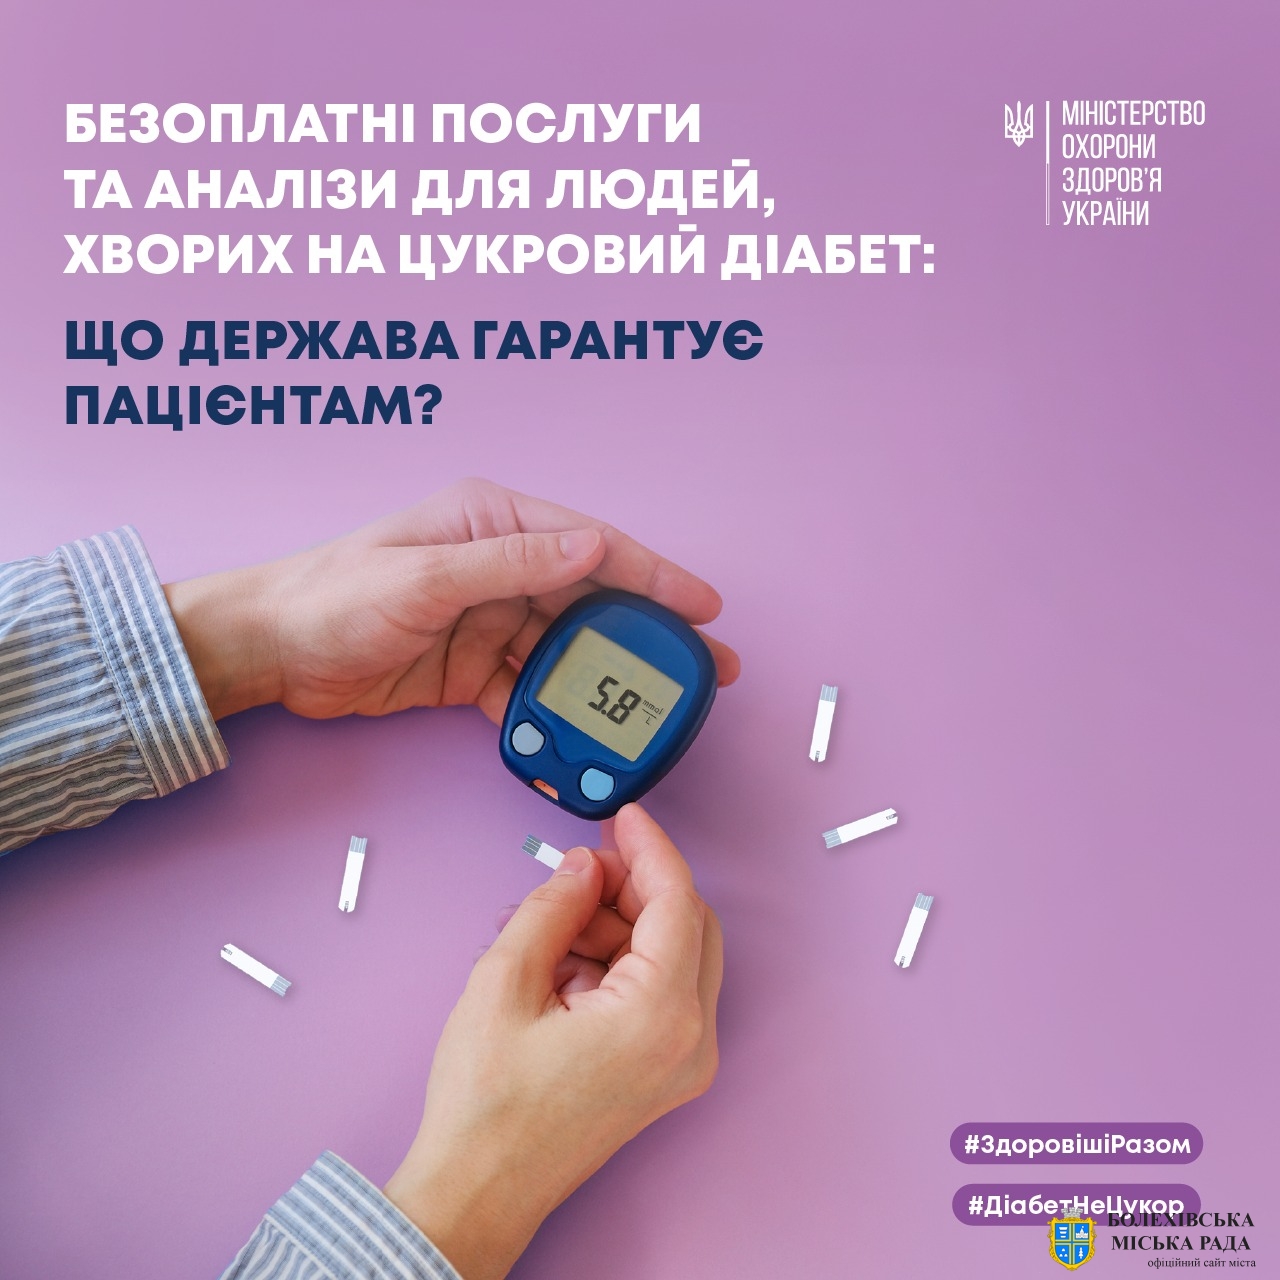 Кожен українець має право на низку безоплатних послуг, які забезпечує держава в межах Програми медичних гарантій